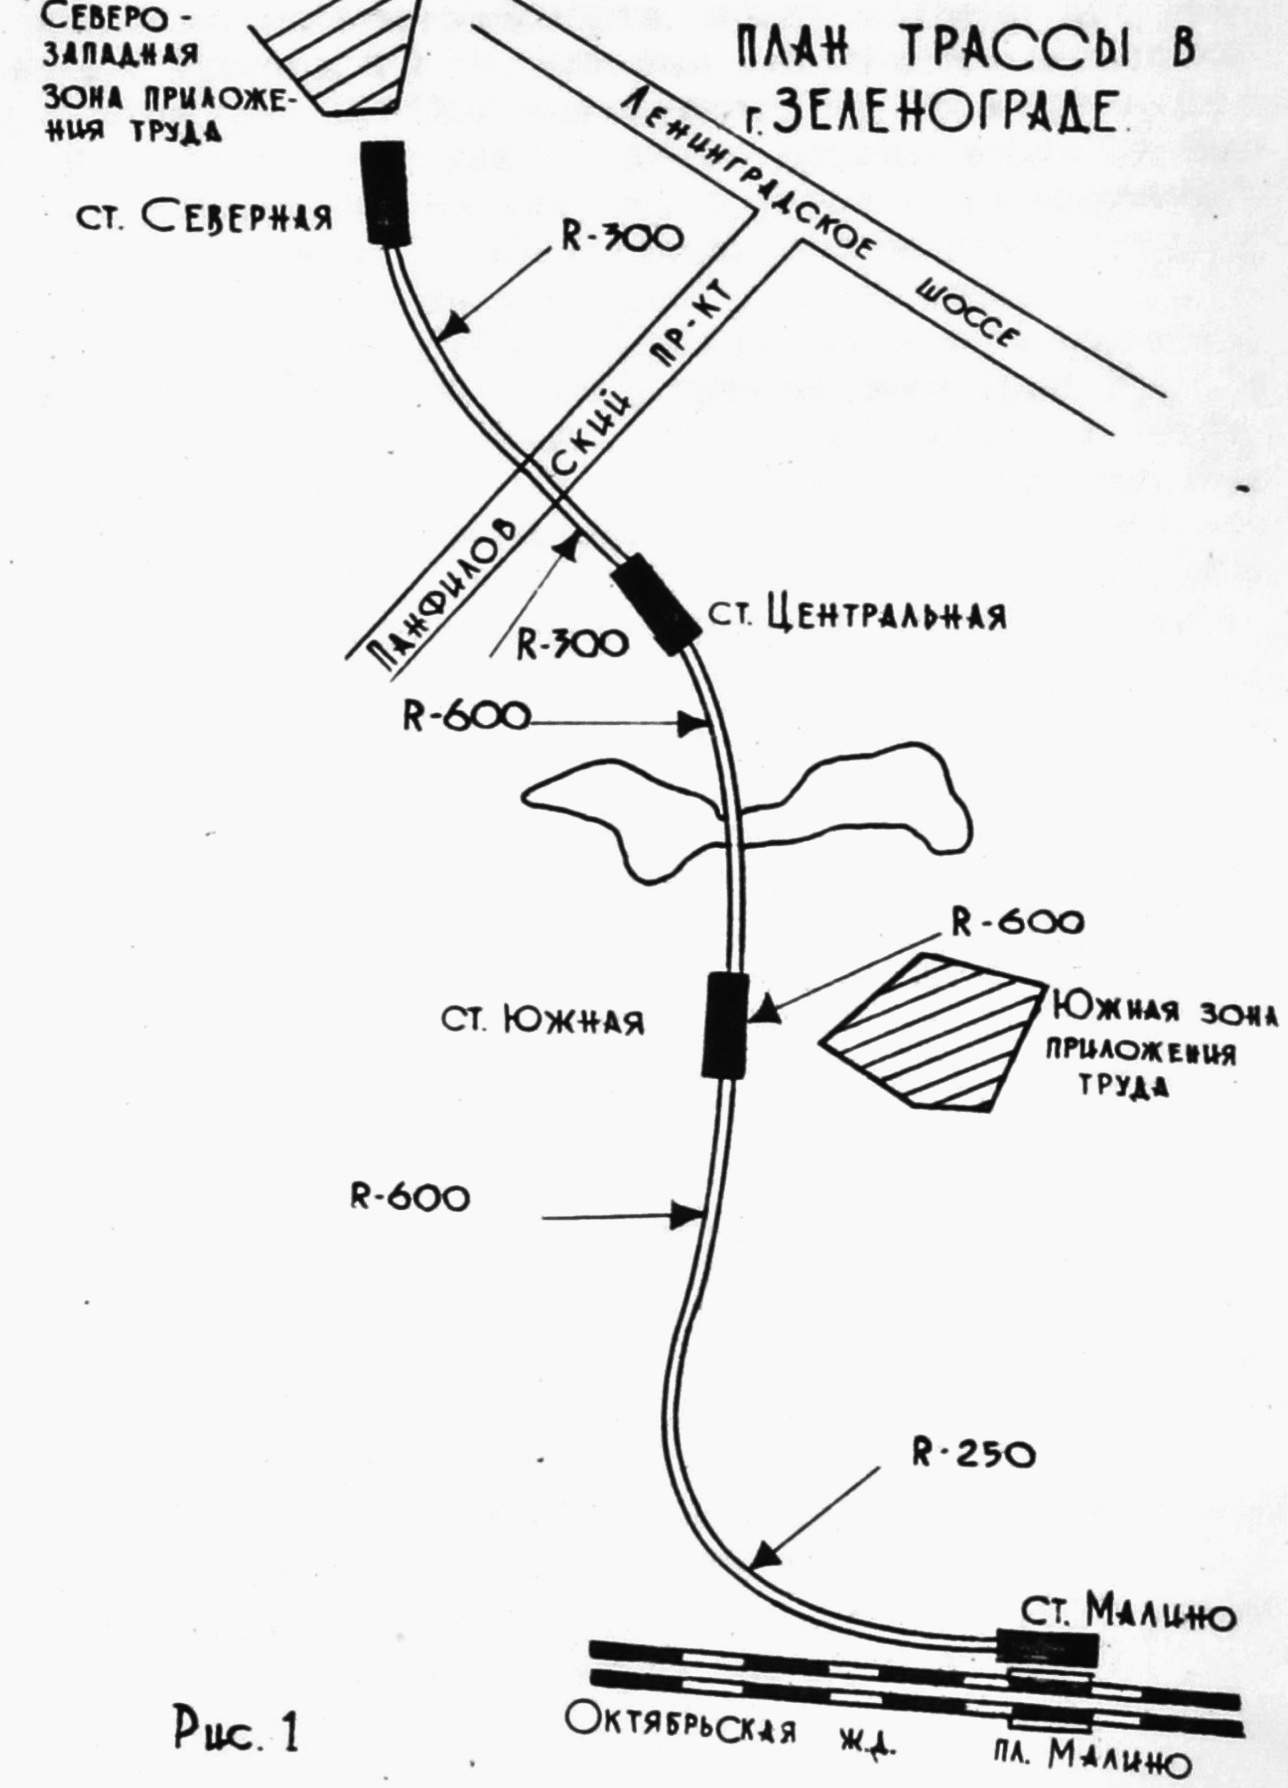 План трассы трубопроводного пневмотранспорта в Зеленограде от 1973 года